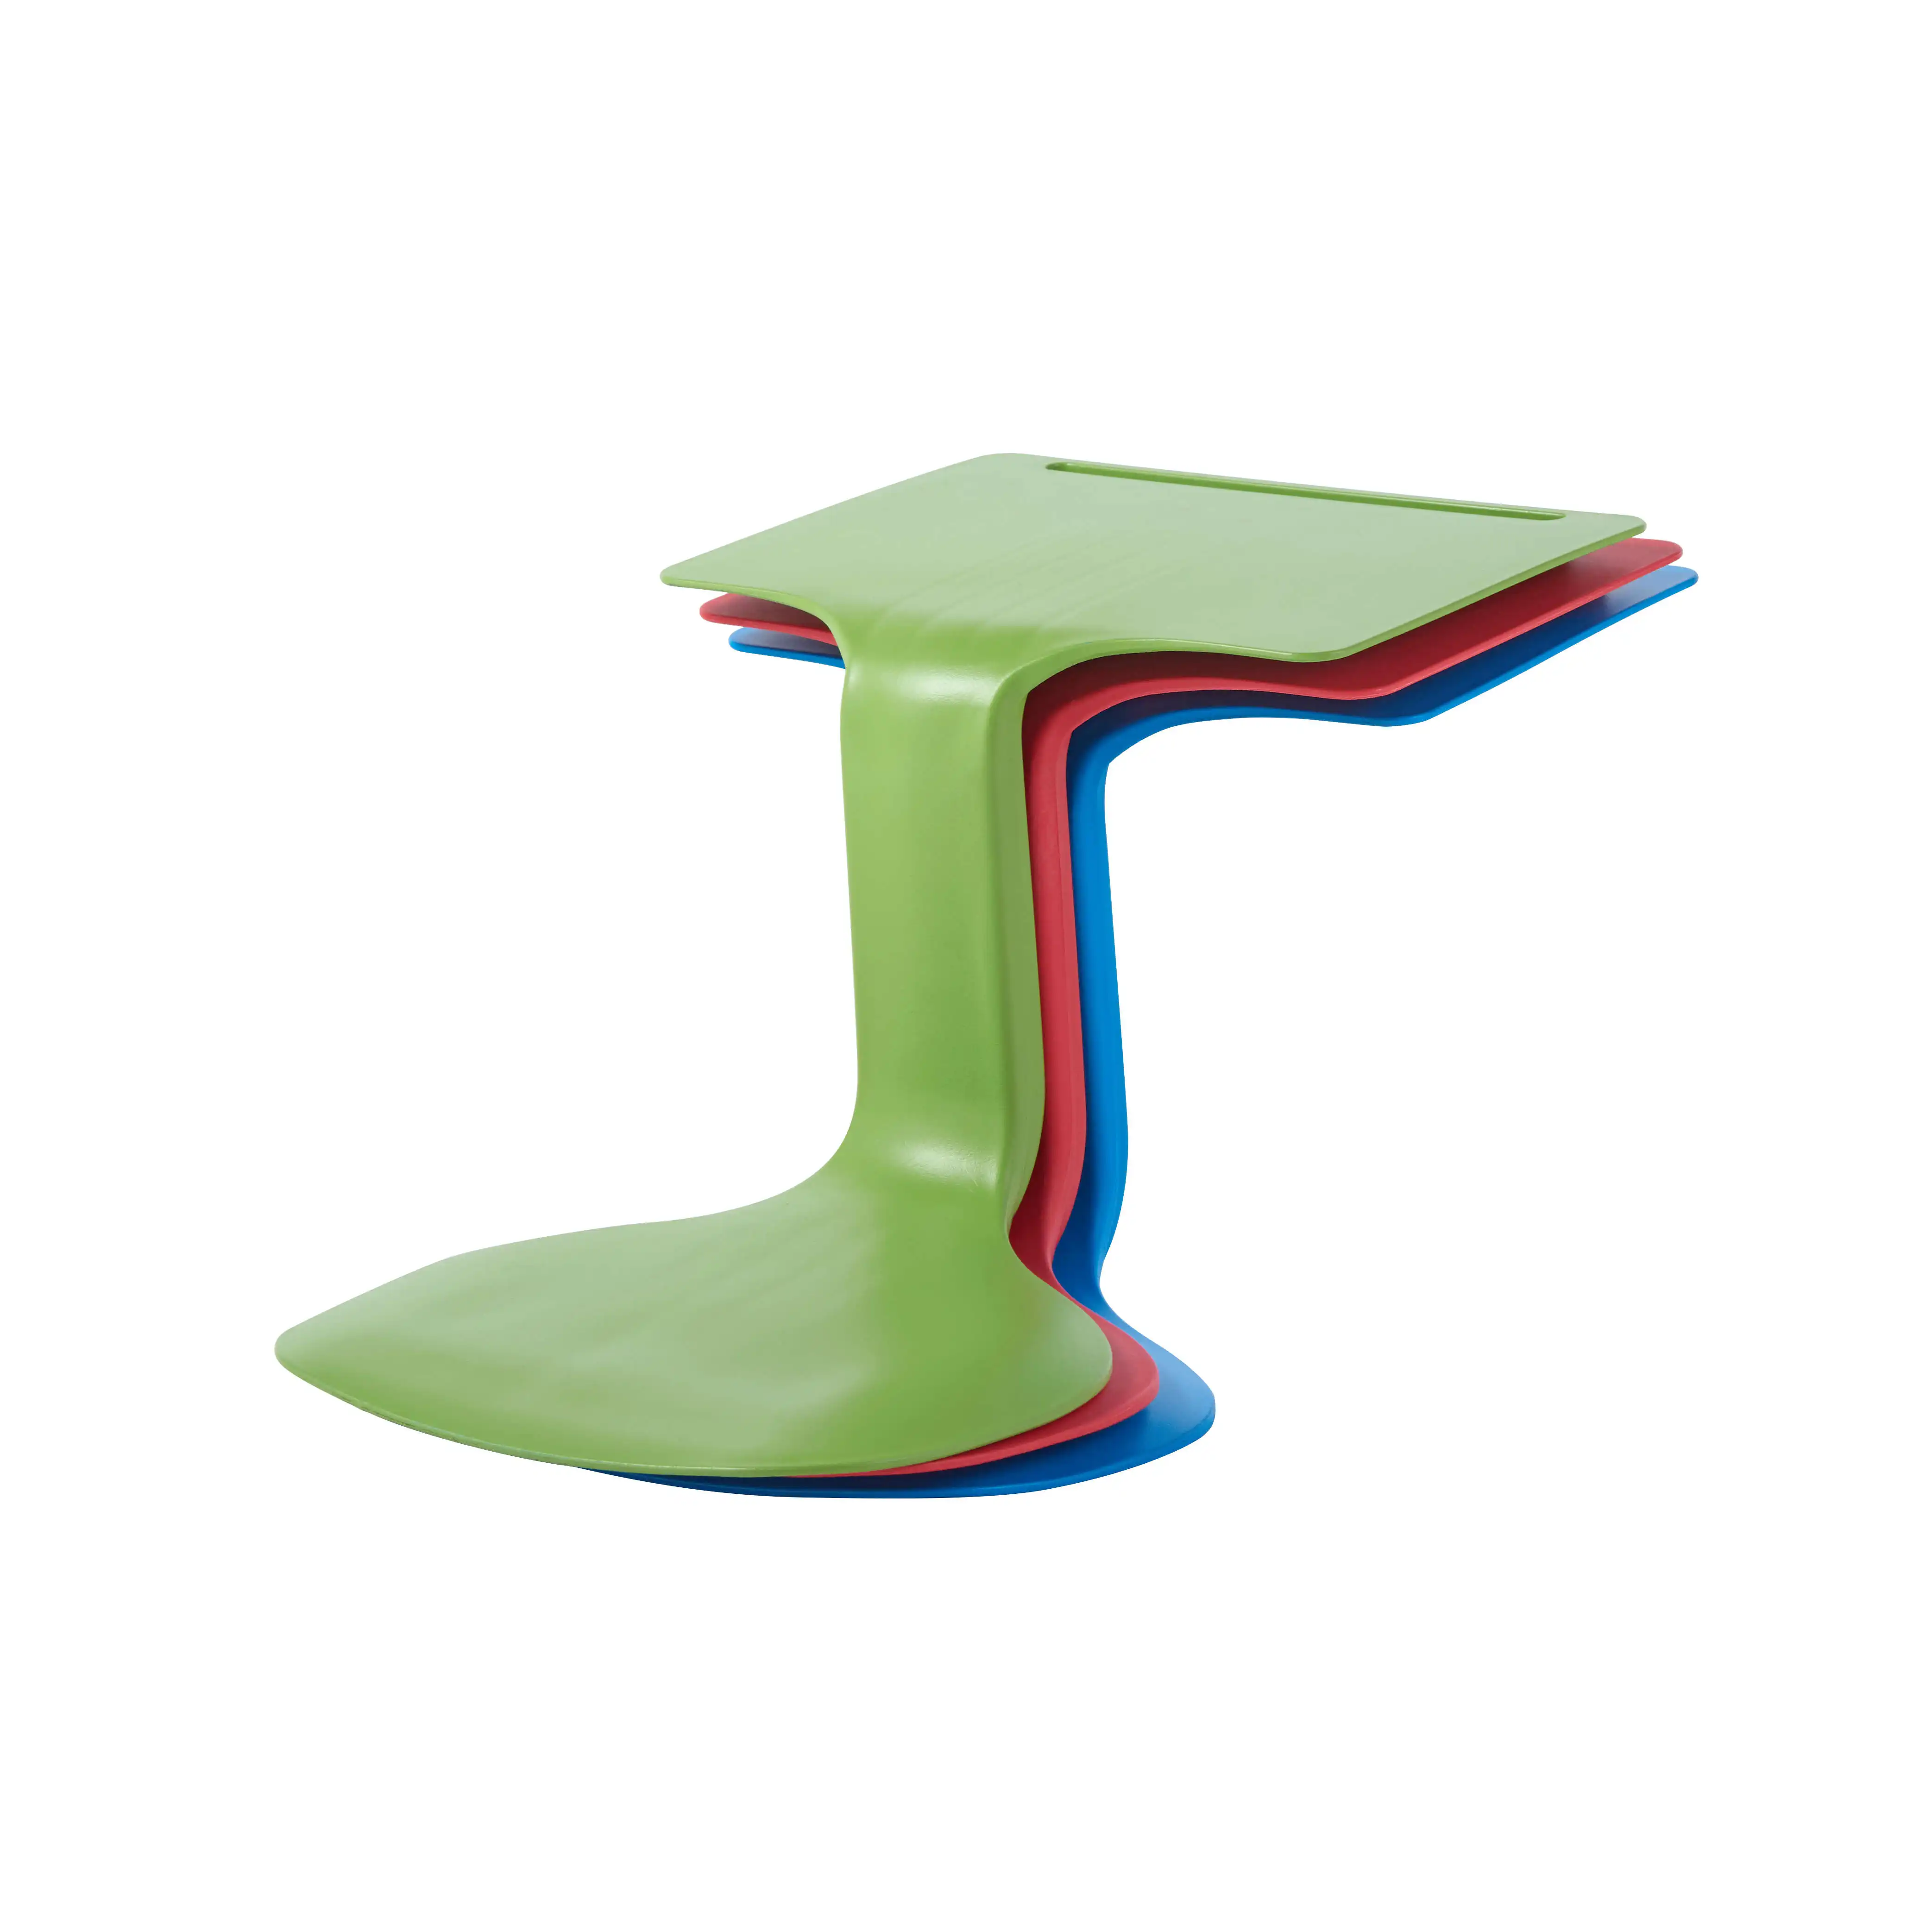 Hot Selling stapelbare und tragbare Kunststoff Kinder Tisch und Stuhl Set Easy Desk Stuhl zum Lernen und Spielen